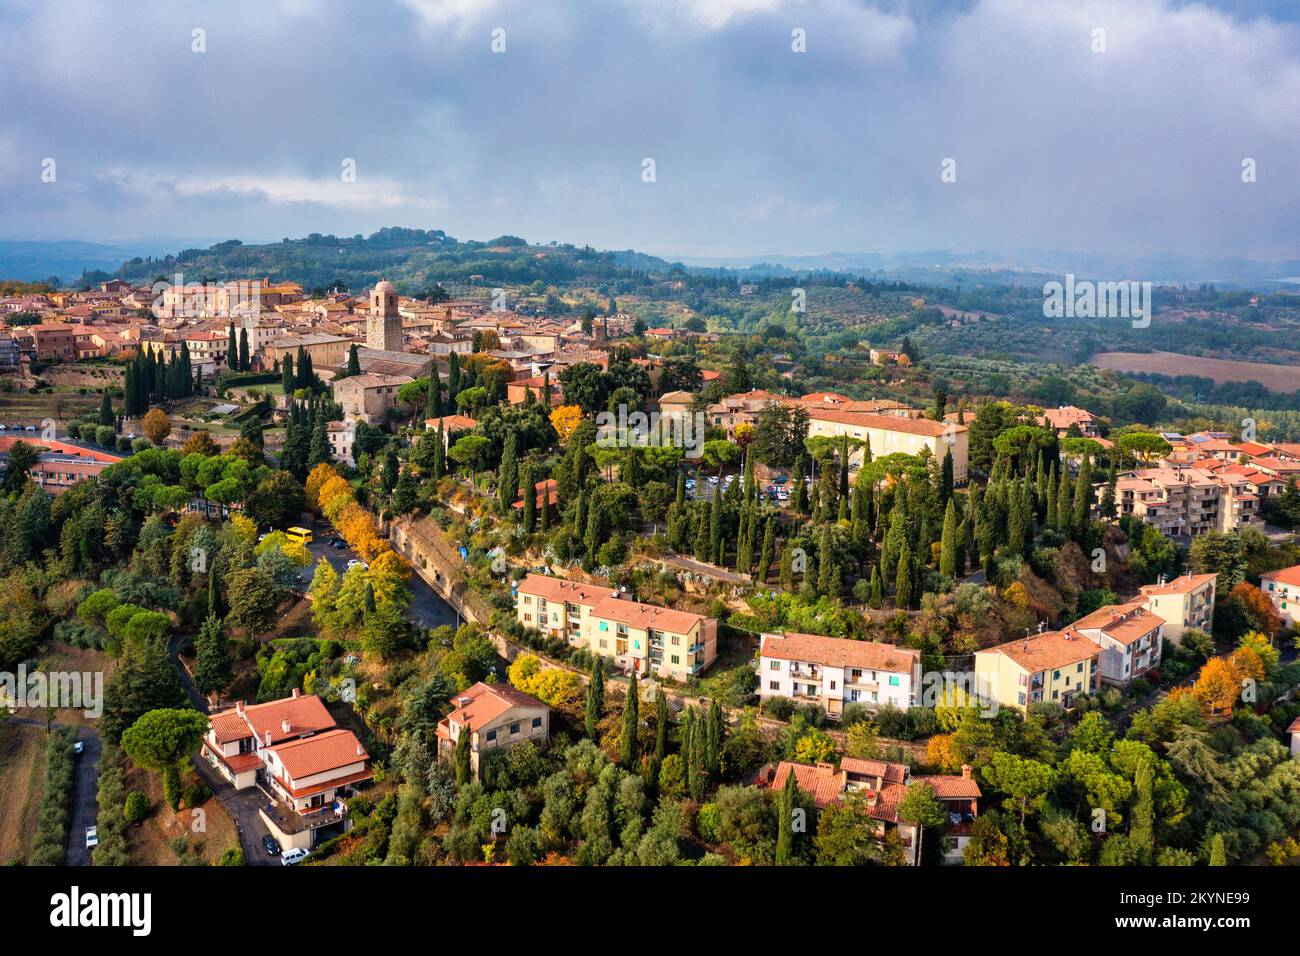 Chiusi Dorf Stadtbild in der Toskana Italien mit orangefarbenen roten Dachziegelhäusern in Berglandschaft und sanften Hügeln. Farbenfroher Abend im kleinen Schlepptau Stockfoto